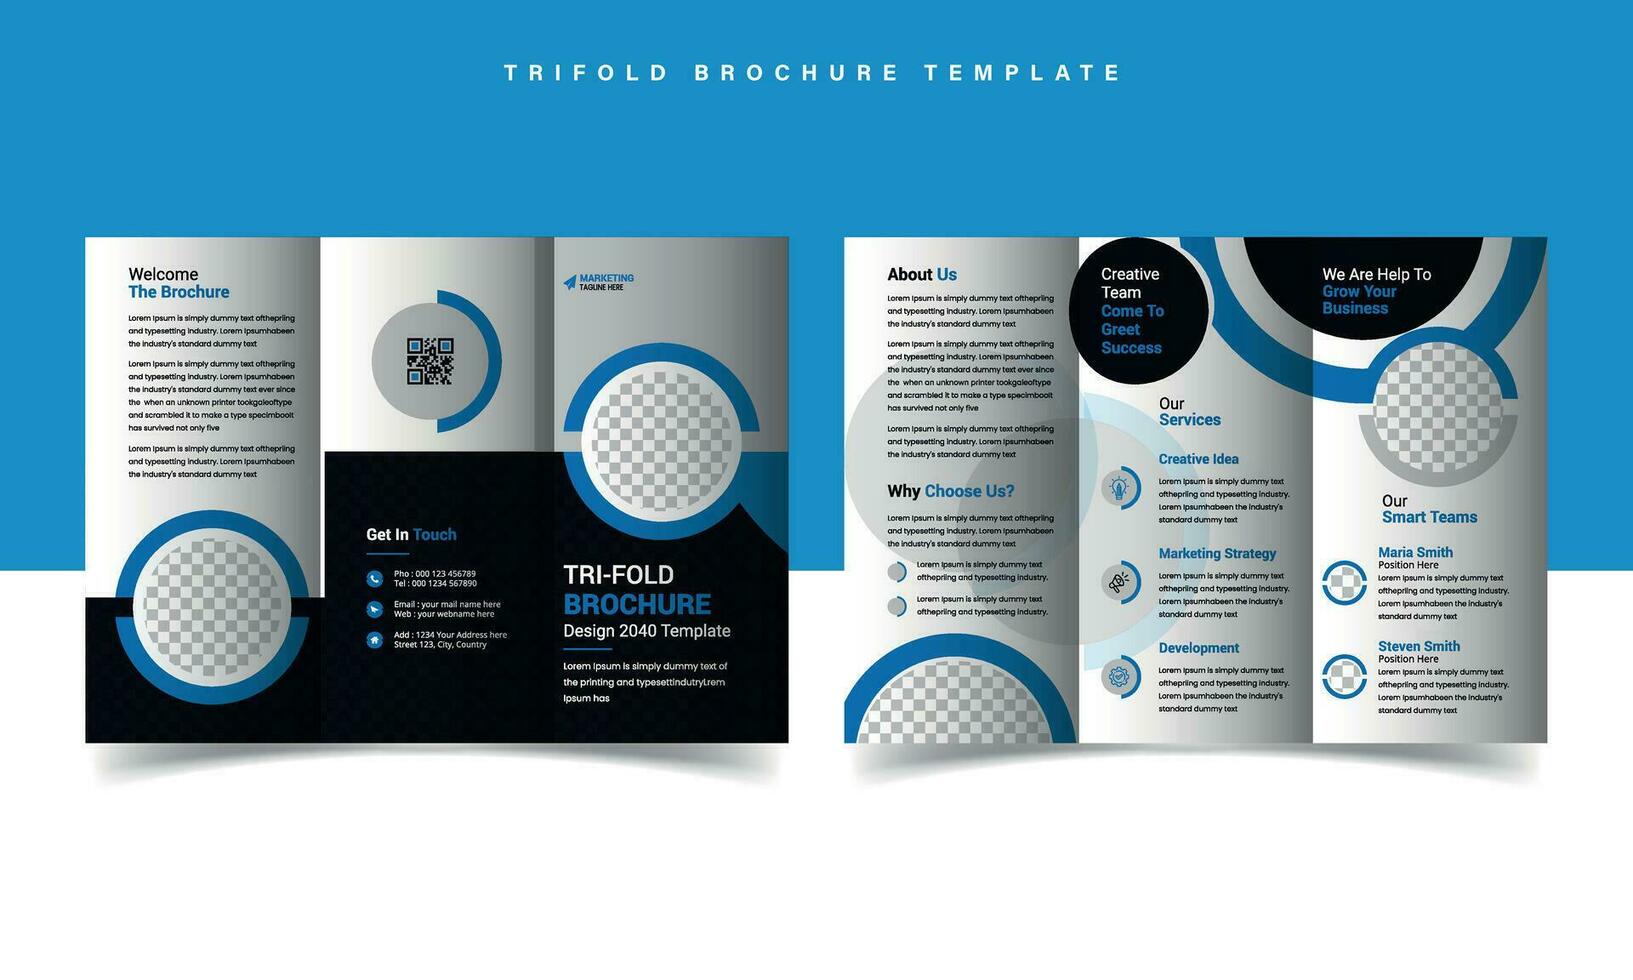 moderne driebladige zakelijke brochure sjabloon vector